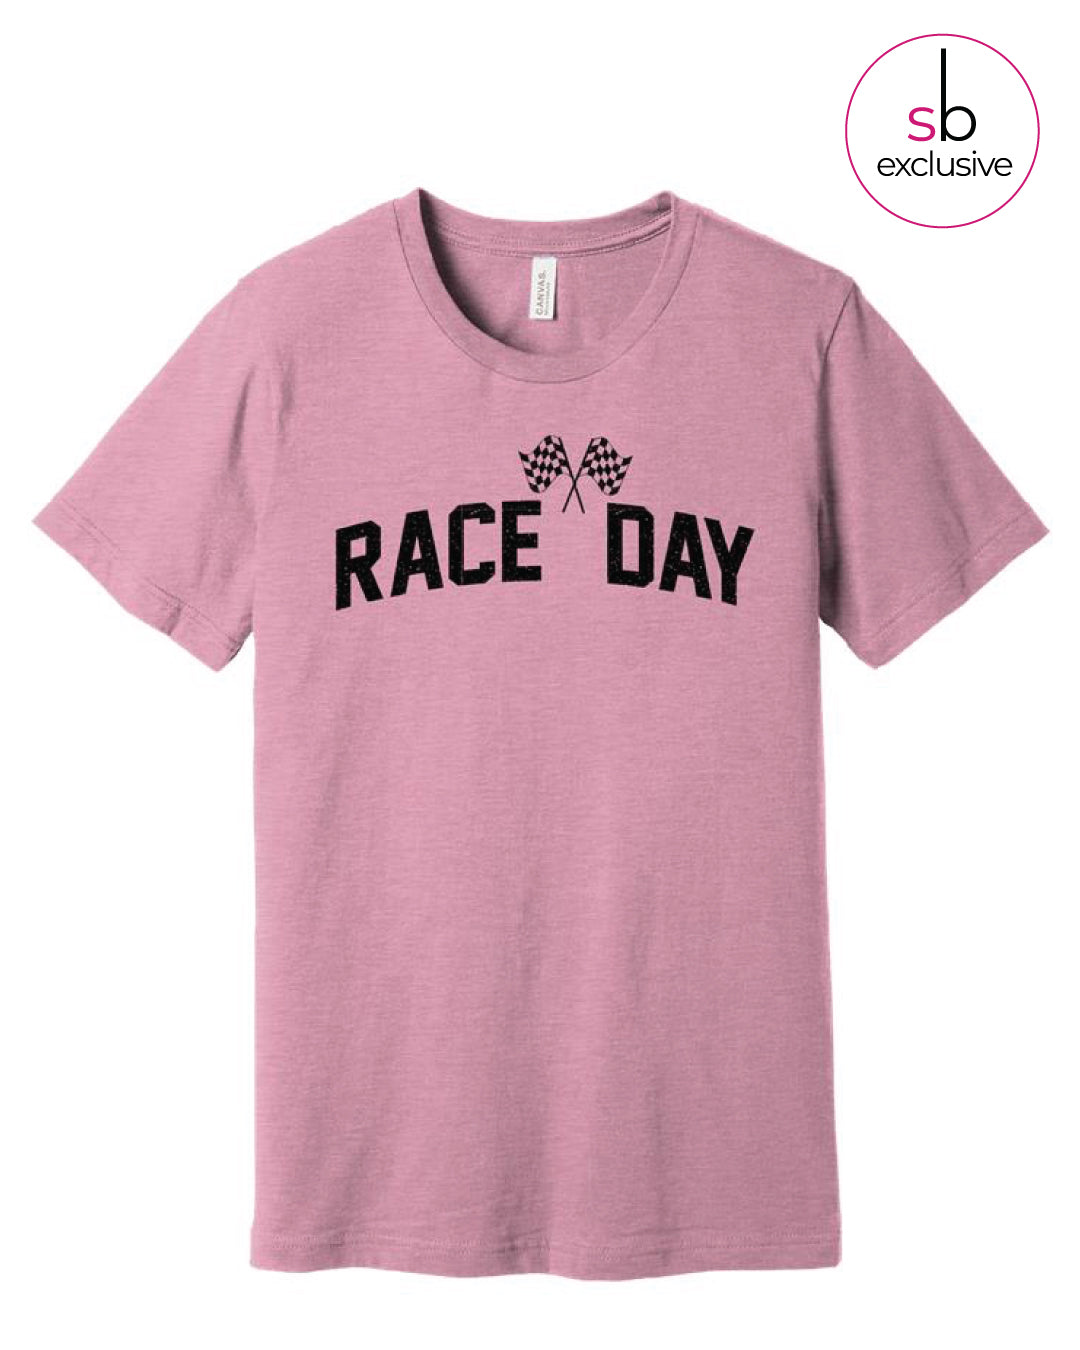 Race Day Tee - Lilac